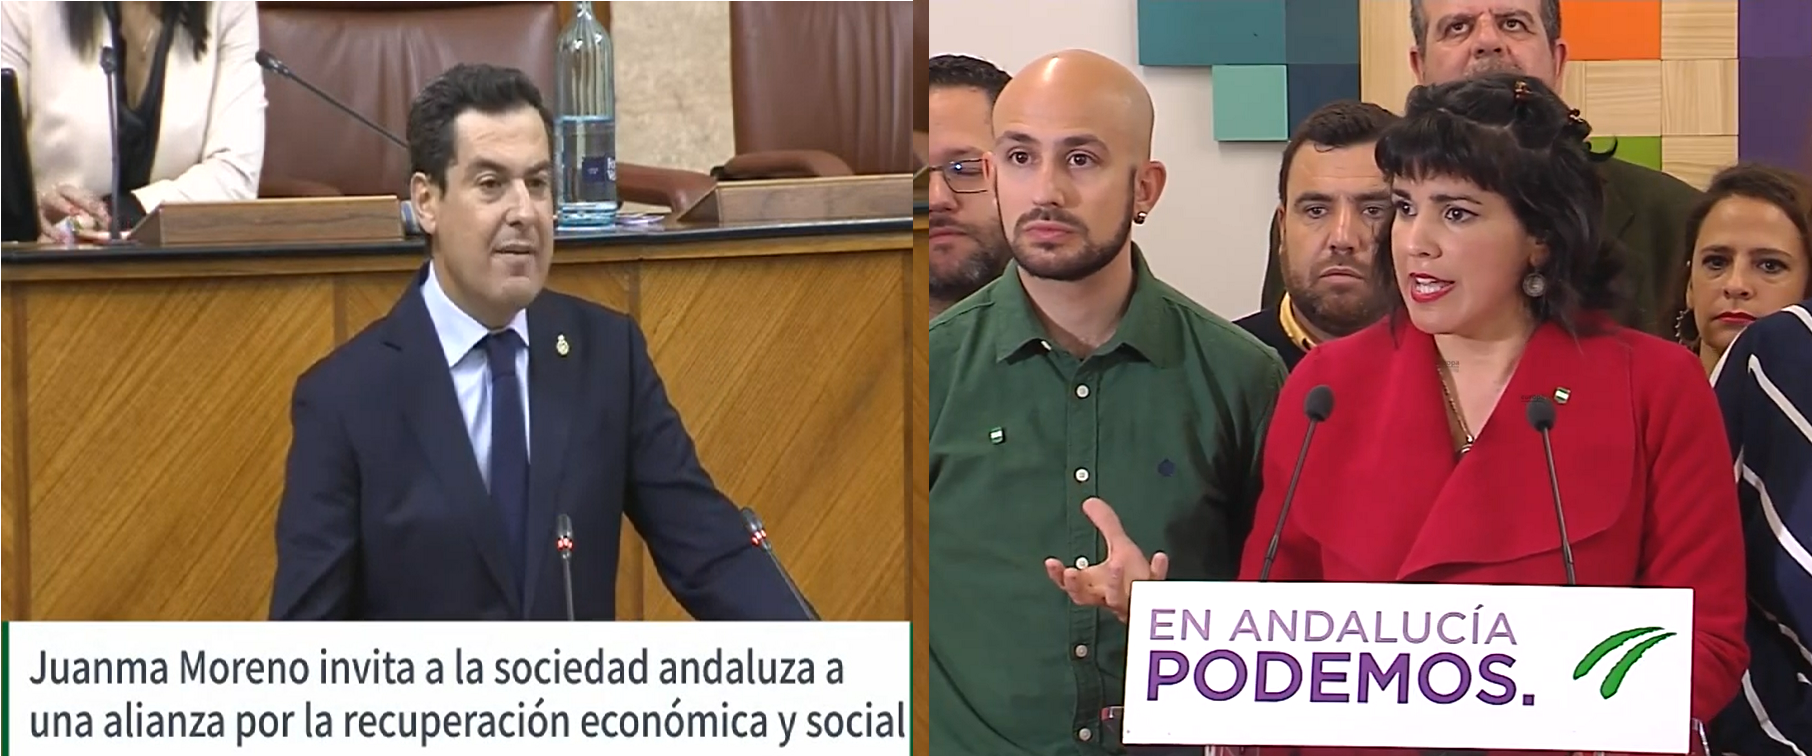 La nueva socialdemocracia representada por los “anticapitalistas” andaluces busca su nueva cuota de poder en el parlamentarismo burgués apostando ahora por el “andalucismo”. Tratan así, justifican, de equipararse al resto…